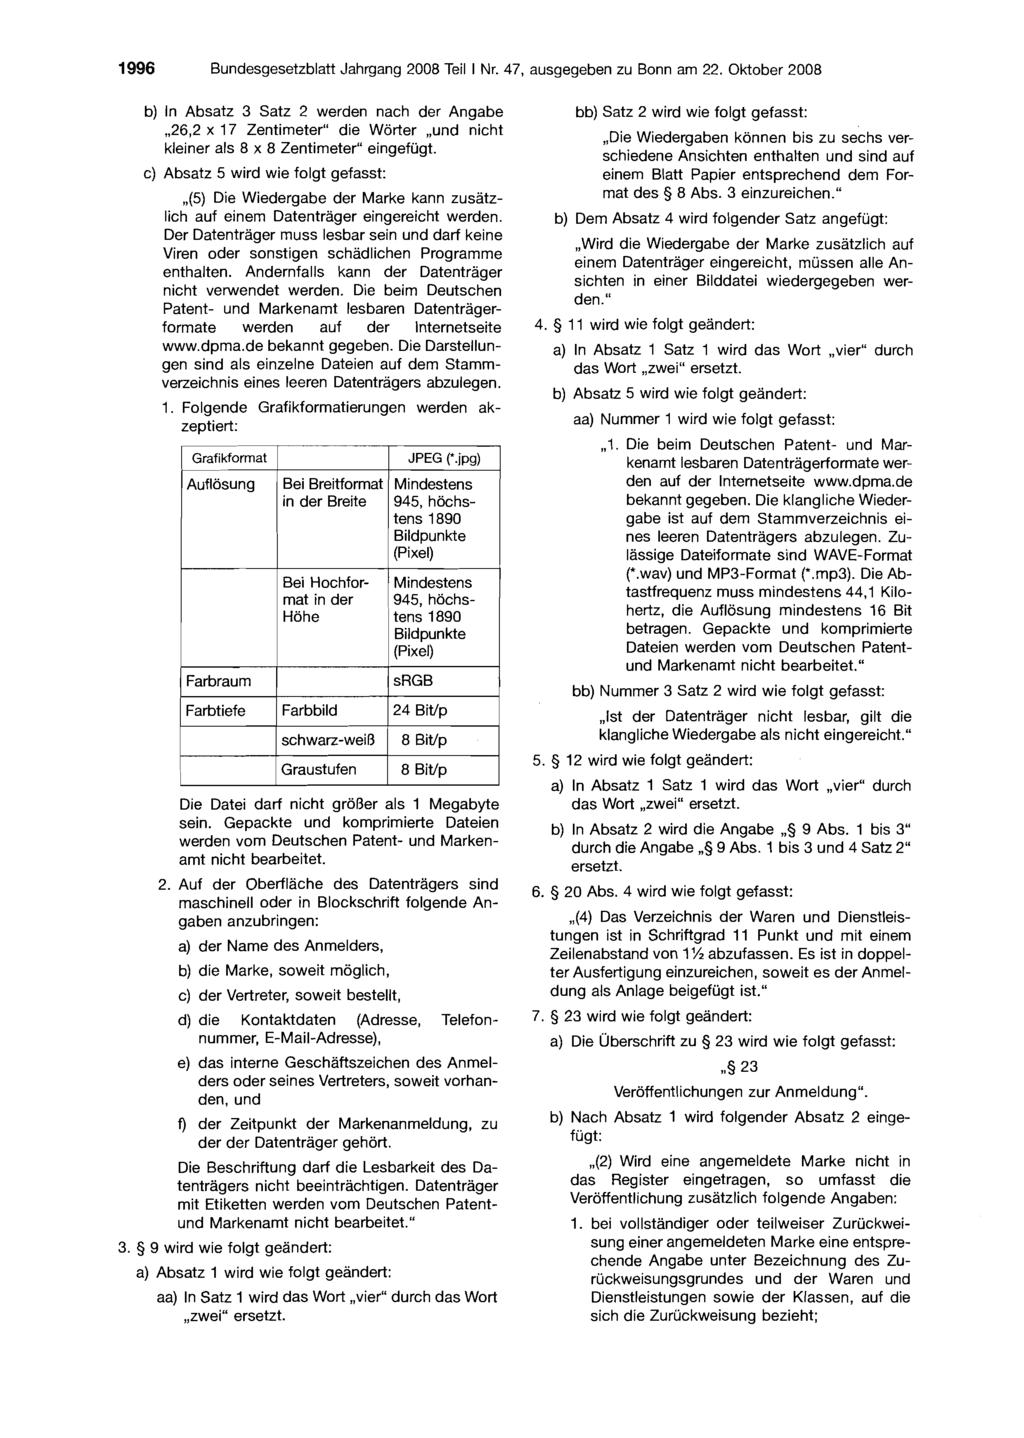 1996 Bundesgesetzblatt,Iahrgang 2008 Teil I Nr. 47, ausgegeben zu Bonn am 22.